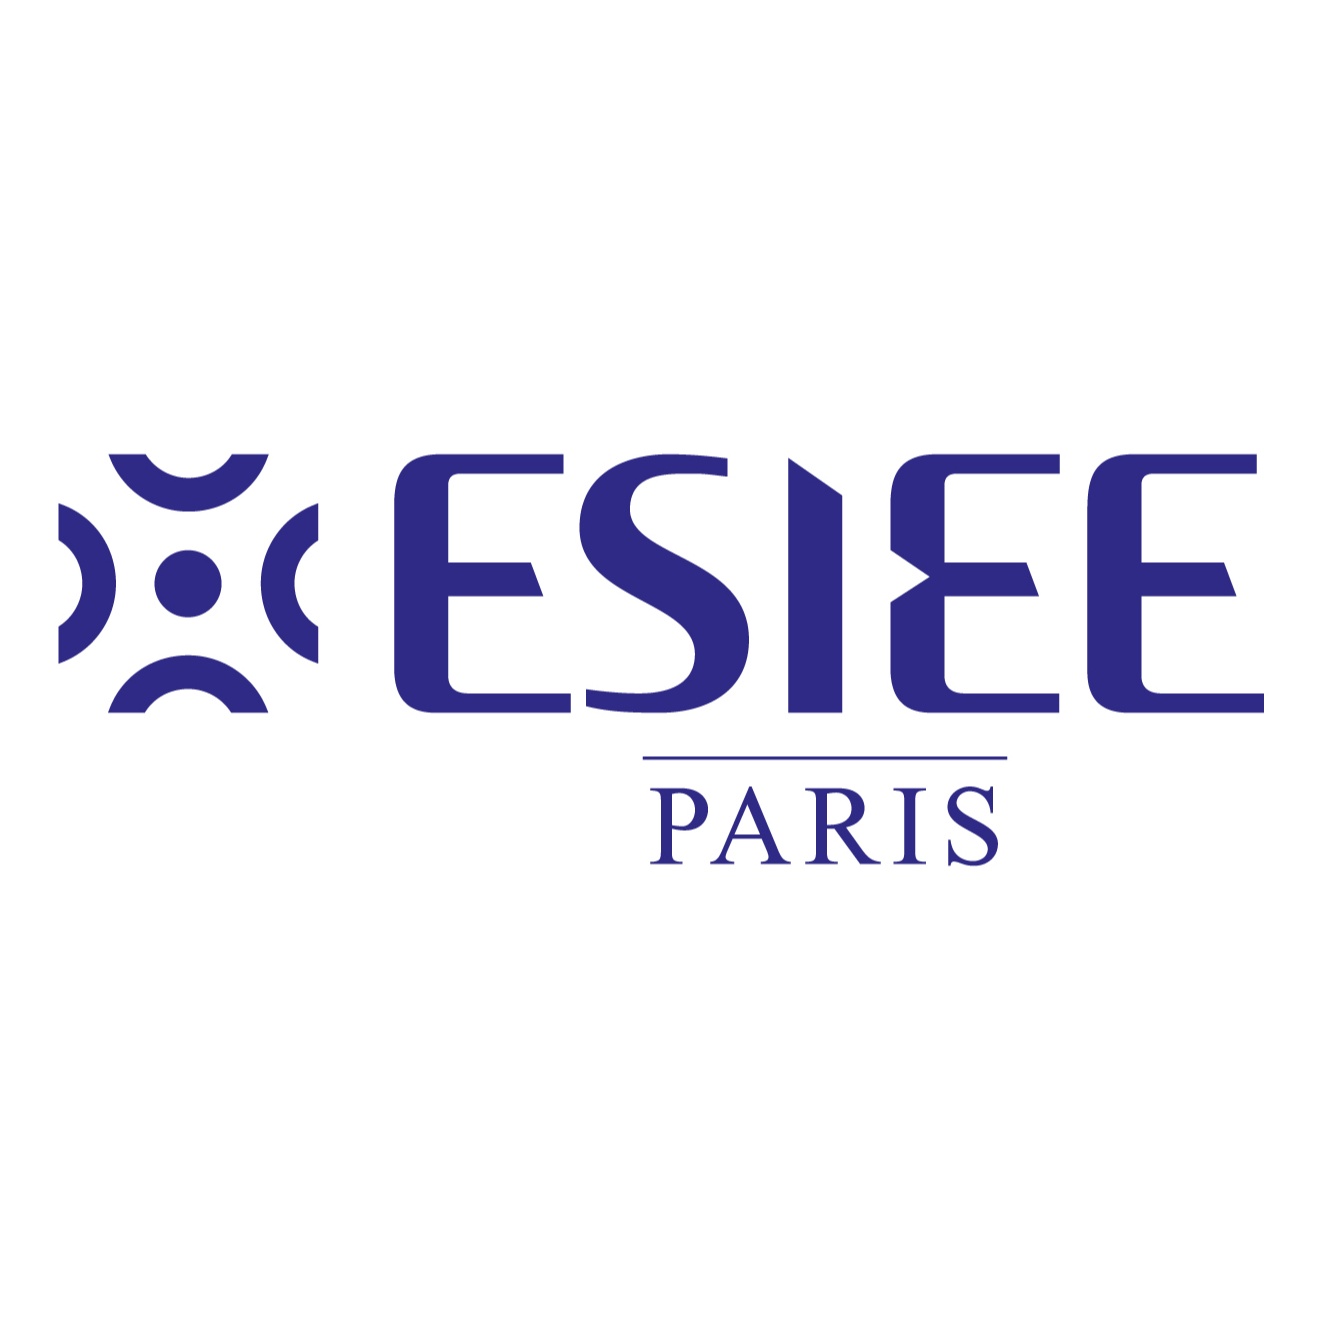 ESIEE Paris - Université Gustave Eiffel